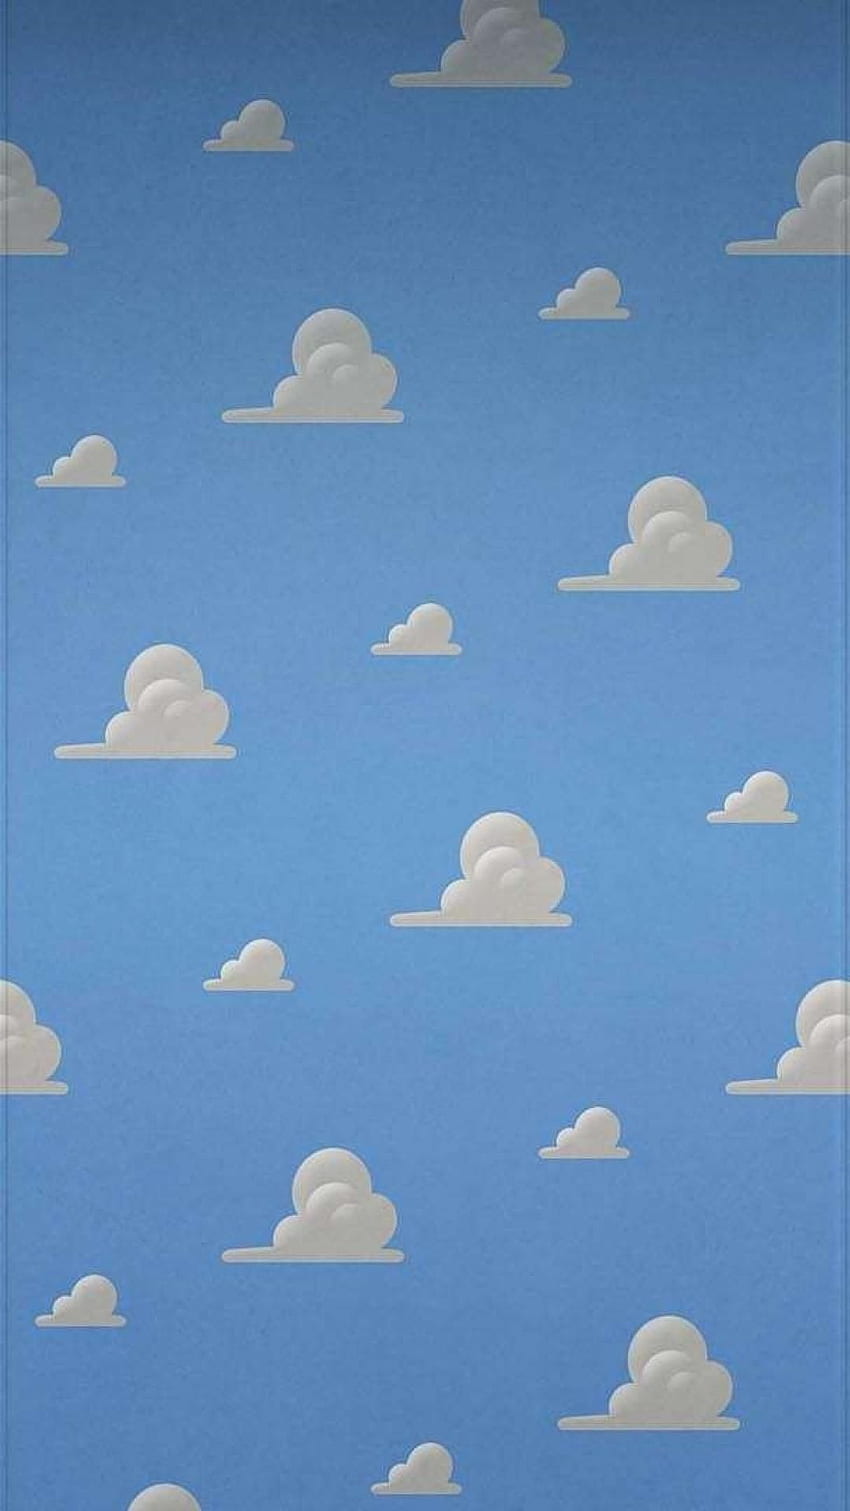 47 Toy Story Cloud Wallpaper  WallpaperSafari